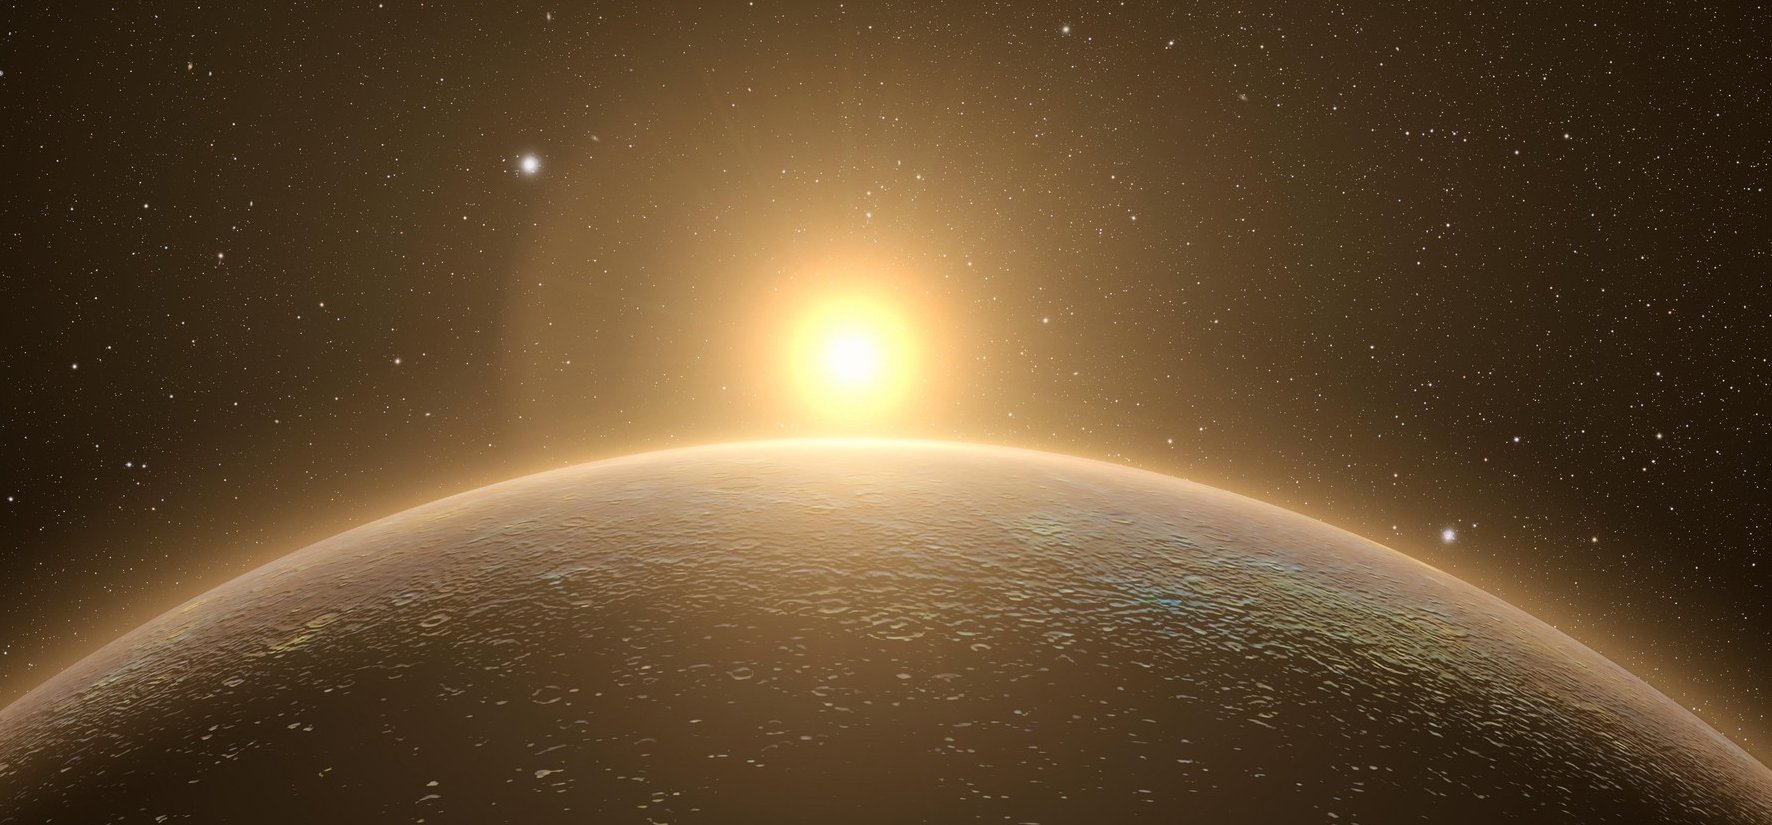 Napi csillagjóslás – március 12: az Ikrek számára egy váratlan csapást jósolnak a bolygók, de a Szűz sem élvezheti ki teljesen ezt a napot